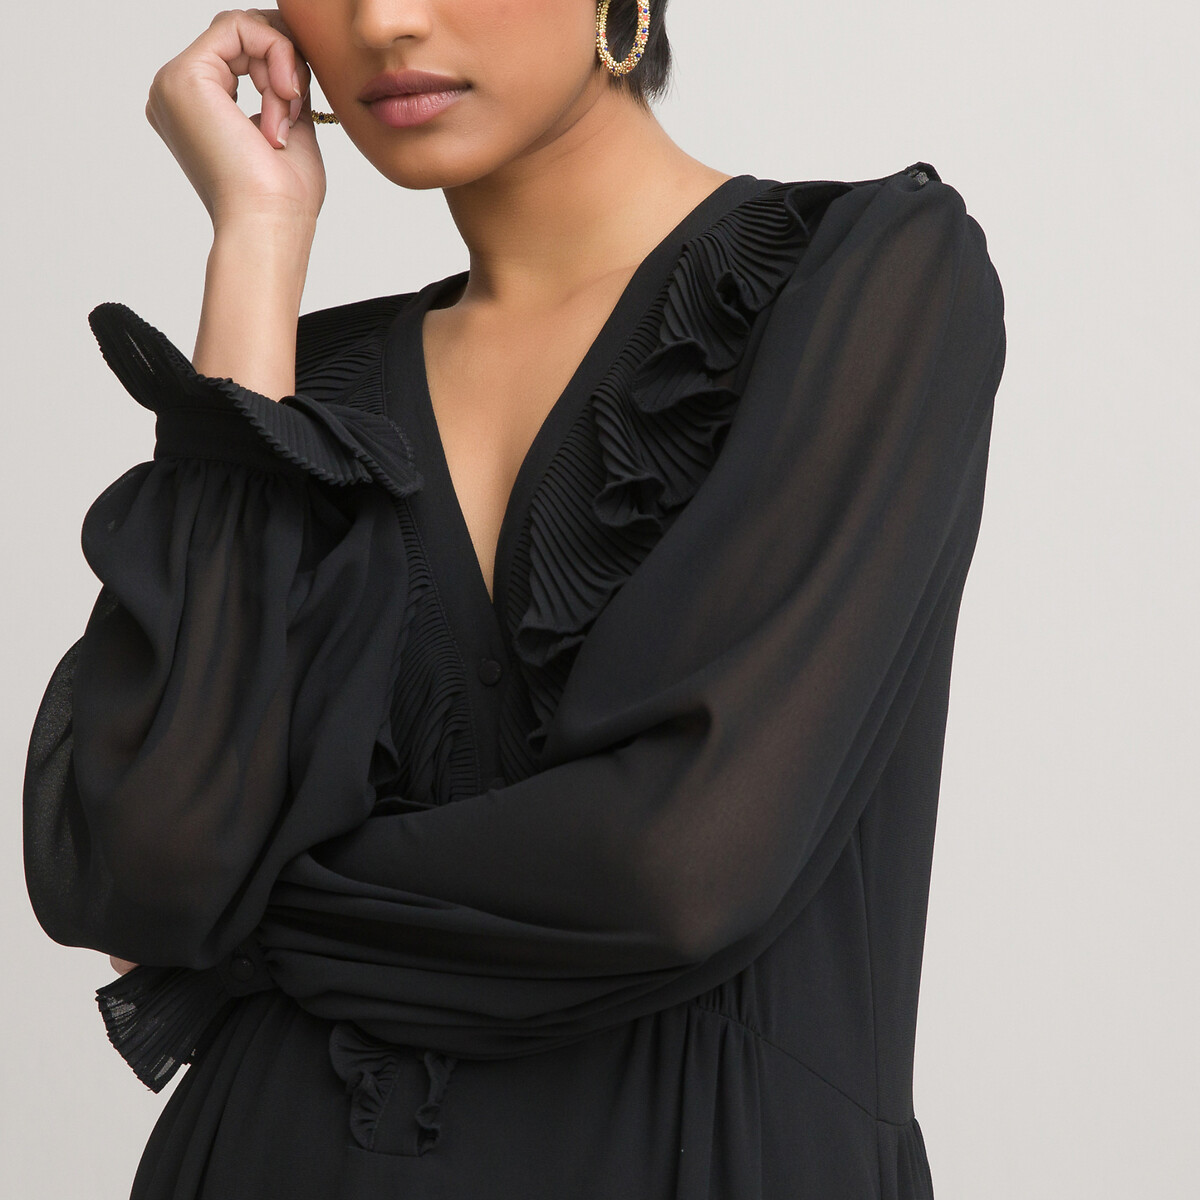 Платье LaRedoute Длинное с V-образным вырезом длинные рукава 46 черный, размер 46 - фото 3